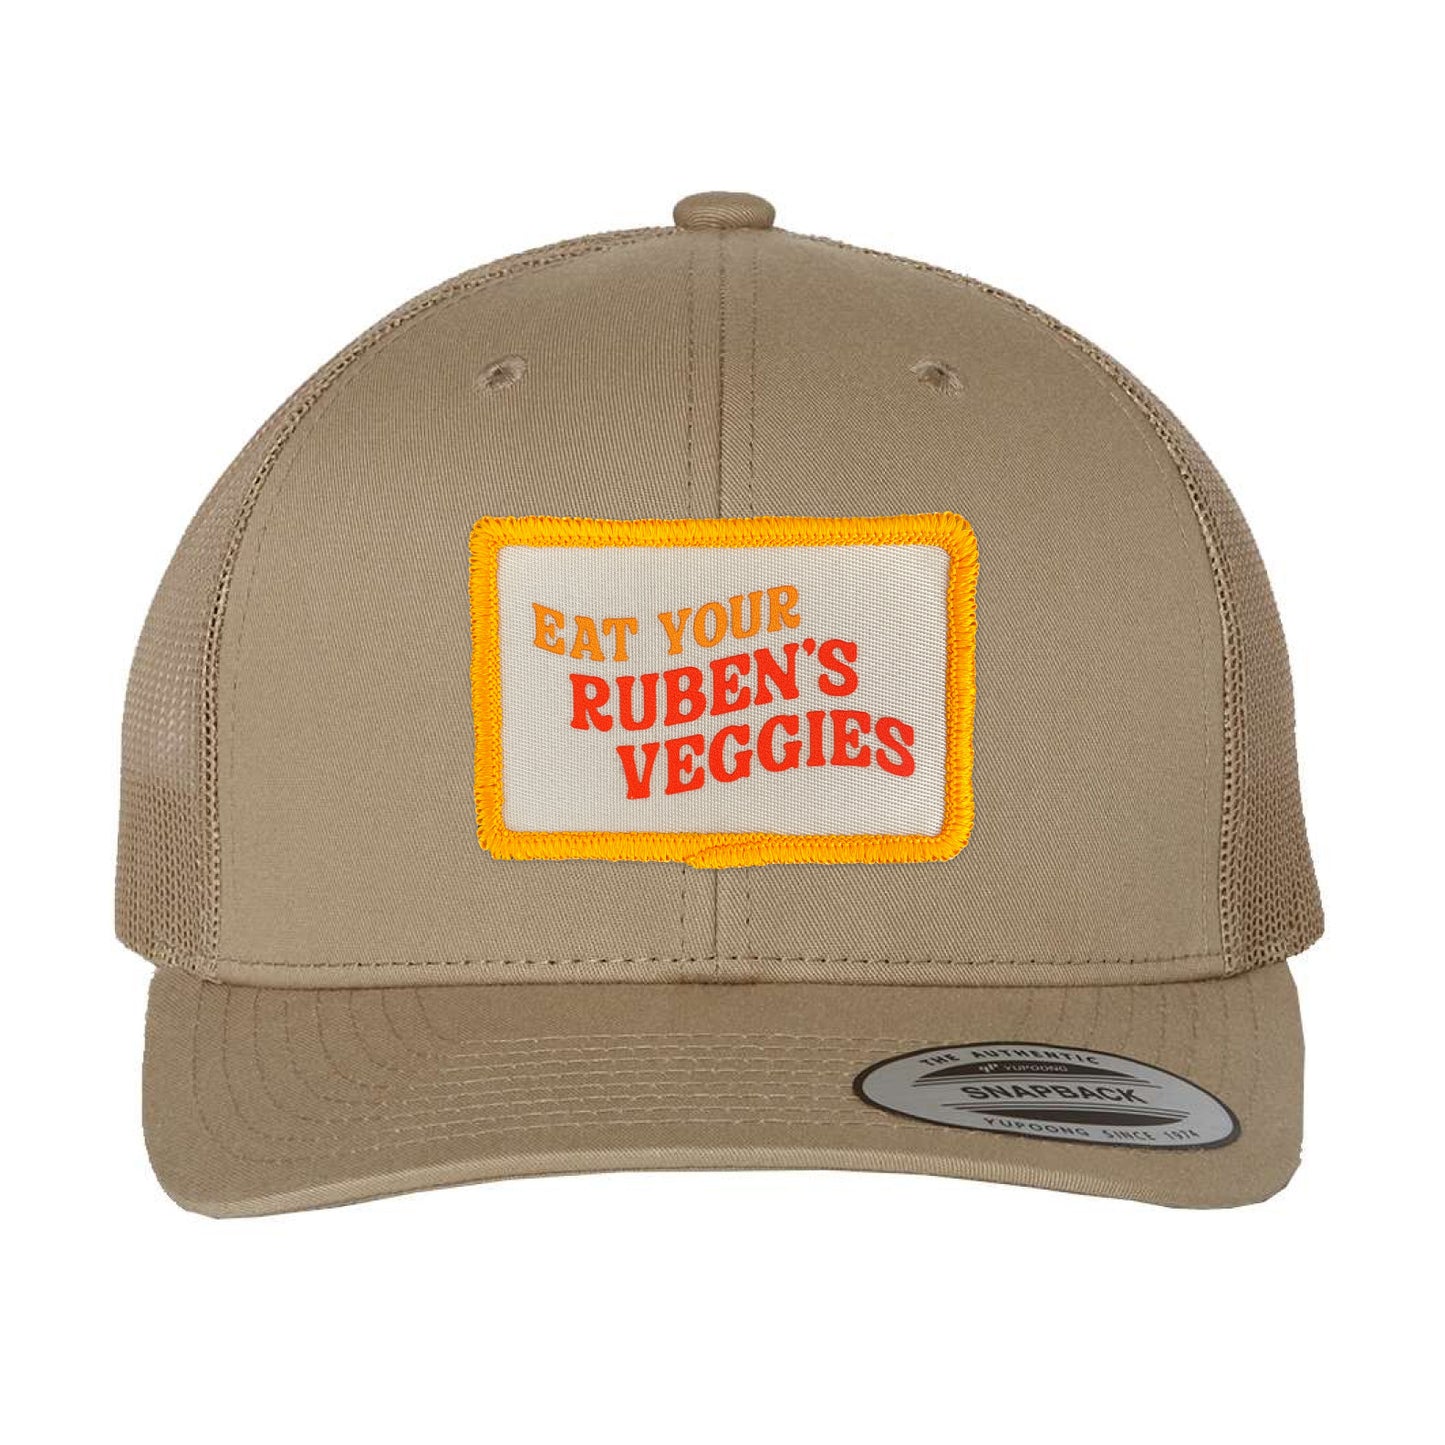 Ruben's Veggies Eat Your Ruben's Veggies Patched Trucker Hat (RVP002-6606)